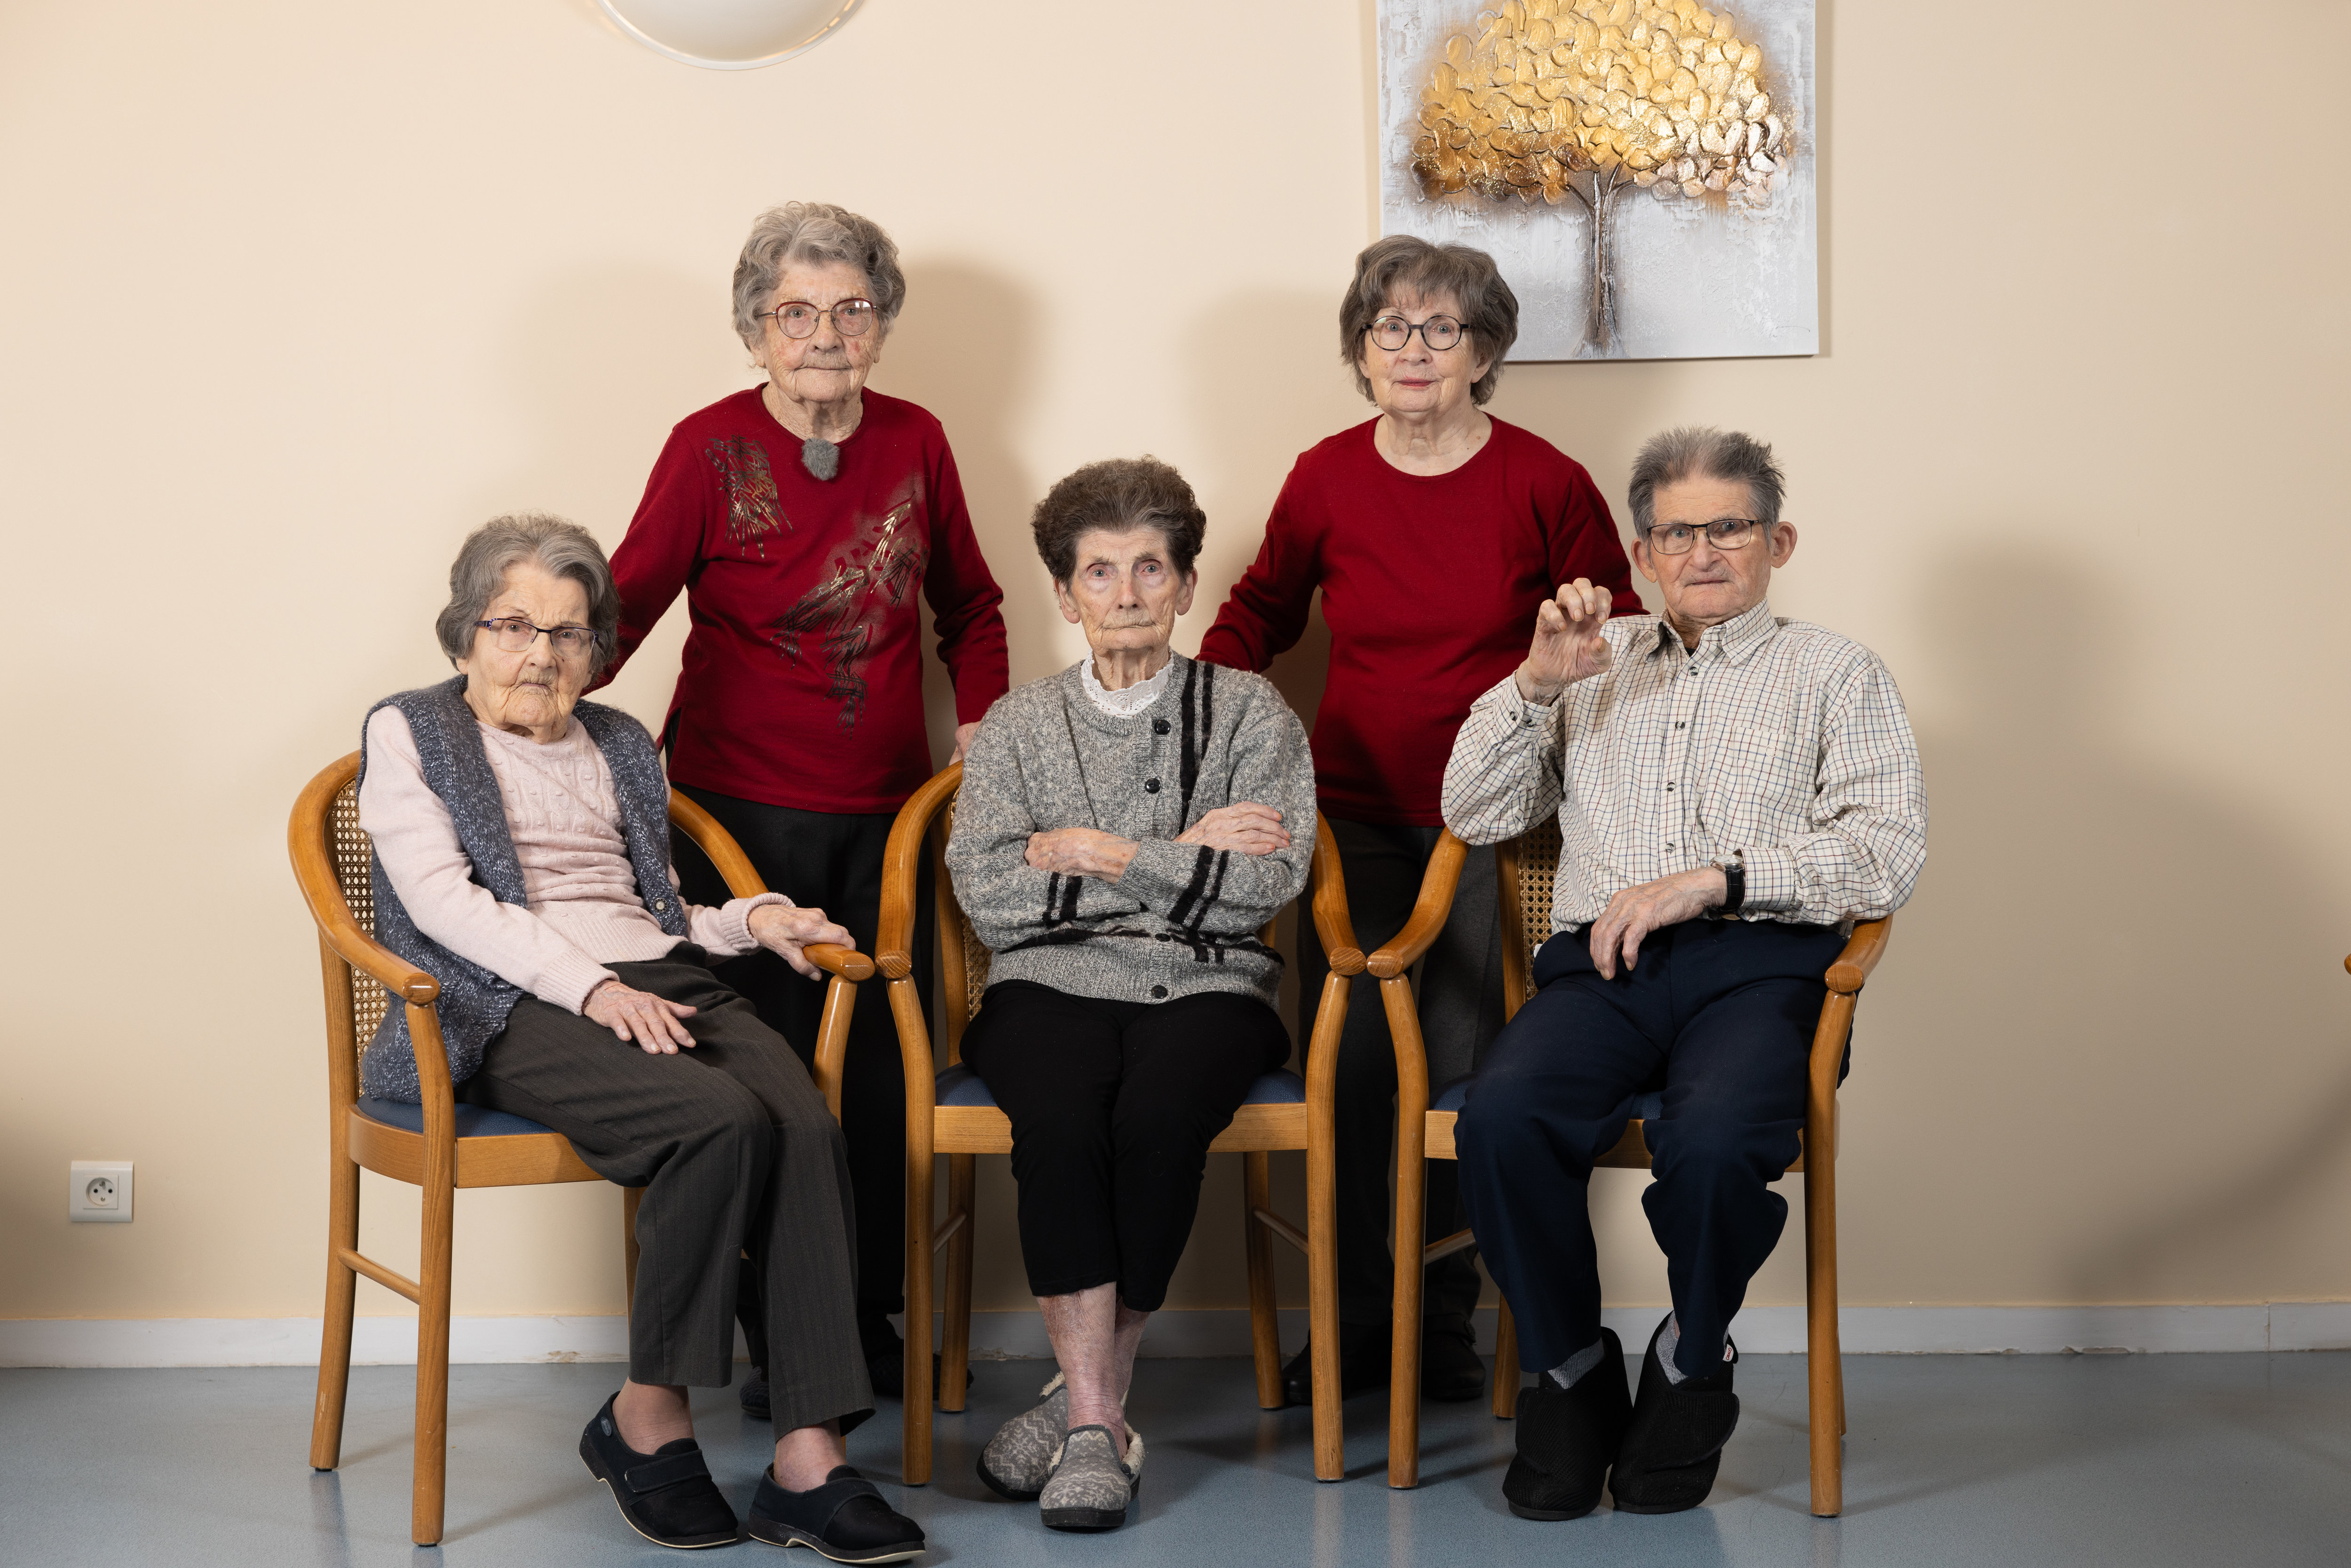 Ginette (100 ans), Paulette (102 ans), Mireille (99 ans), Christiane (97 ans) et Philippe (96 ans) (de gauche à droite), la fratrie Toutée s'est réunie pour la nouvelle de son entrée au livre Guiness des records. LP/Arnaud Journois